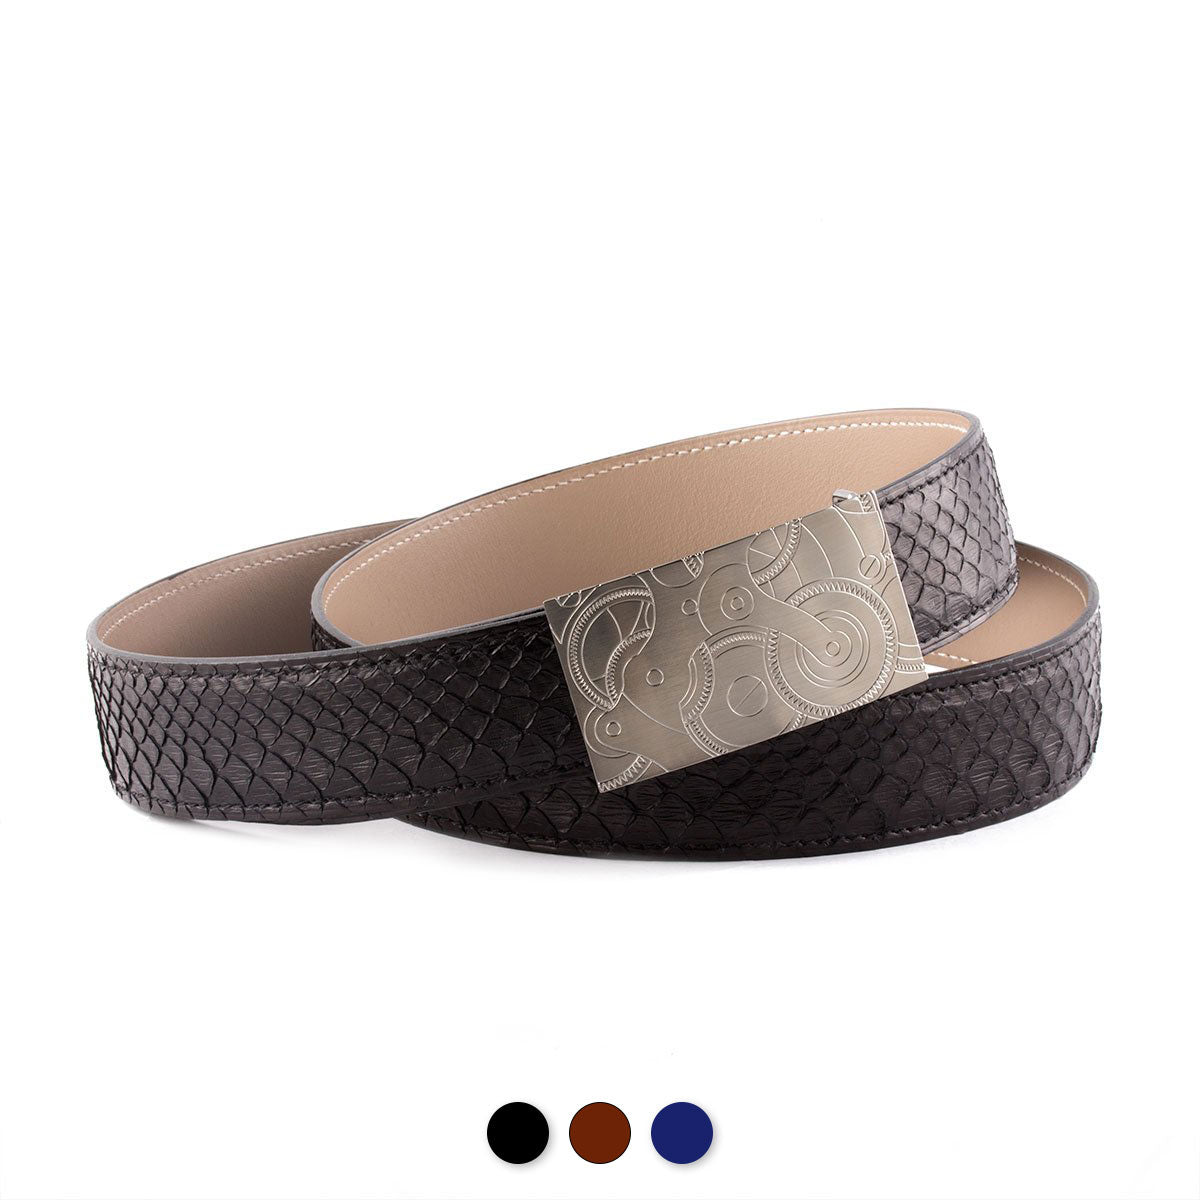 Ceinture réversible type Hermès - Python - watch band leather strap - ABP Concept -